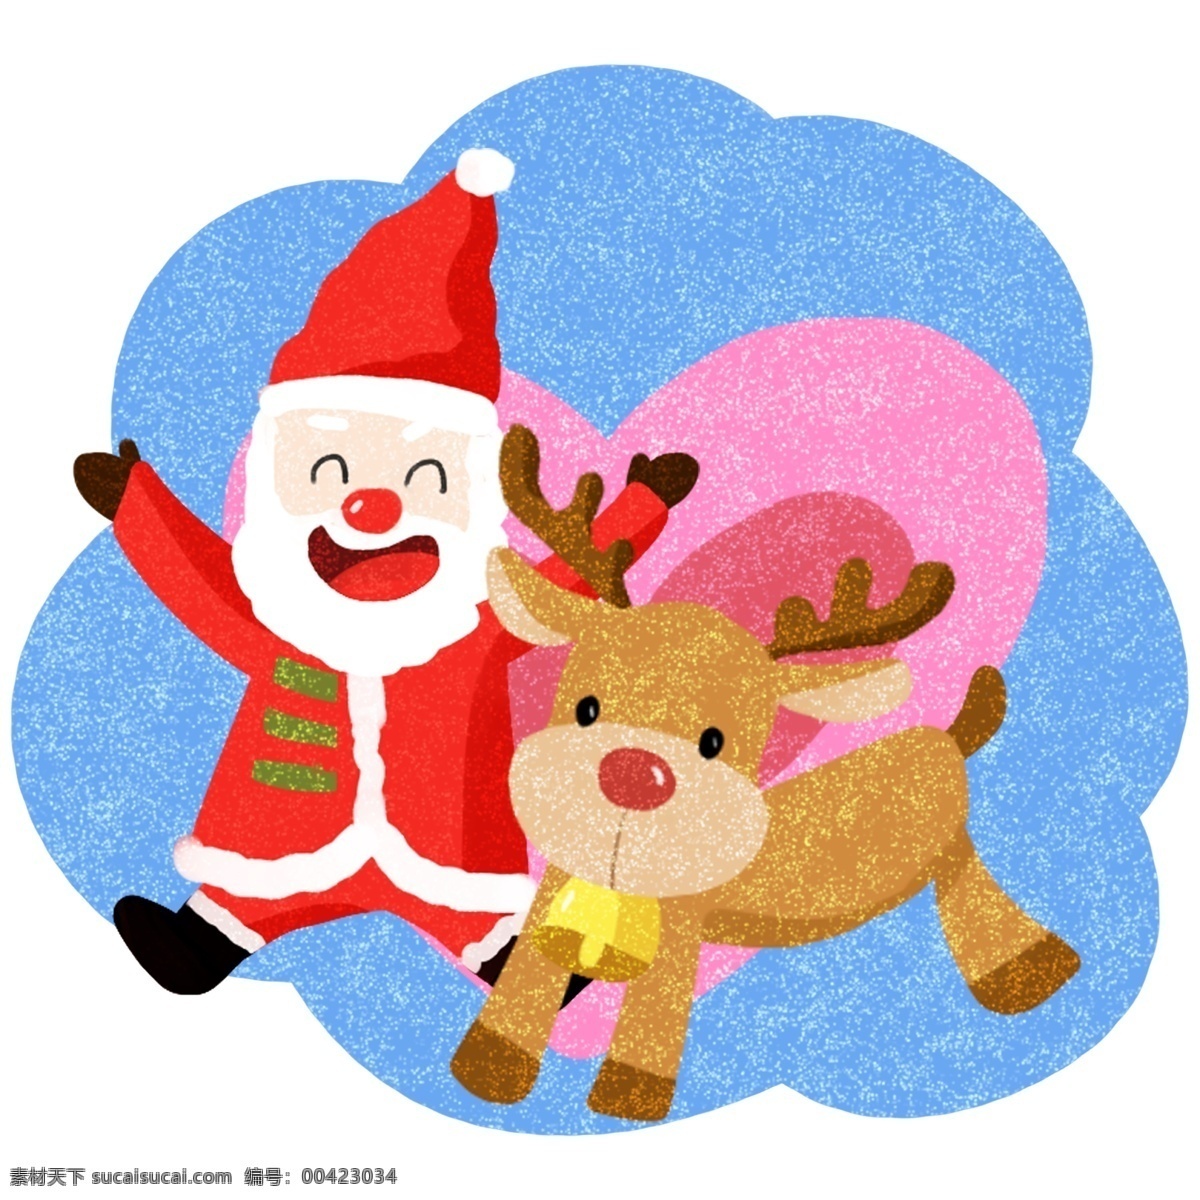 圣诞节 可爱 圣诞老人 卡通 插画 麋鹿 合集 圣诞 过节 节日 冬季 淘宝 天猫 海报 活动 促销 大促 送礼物的老人